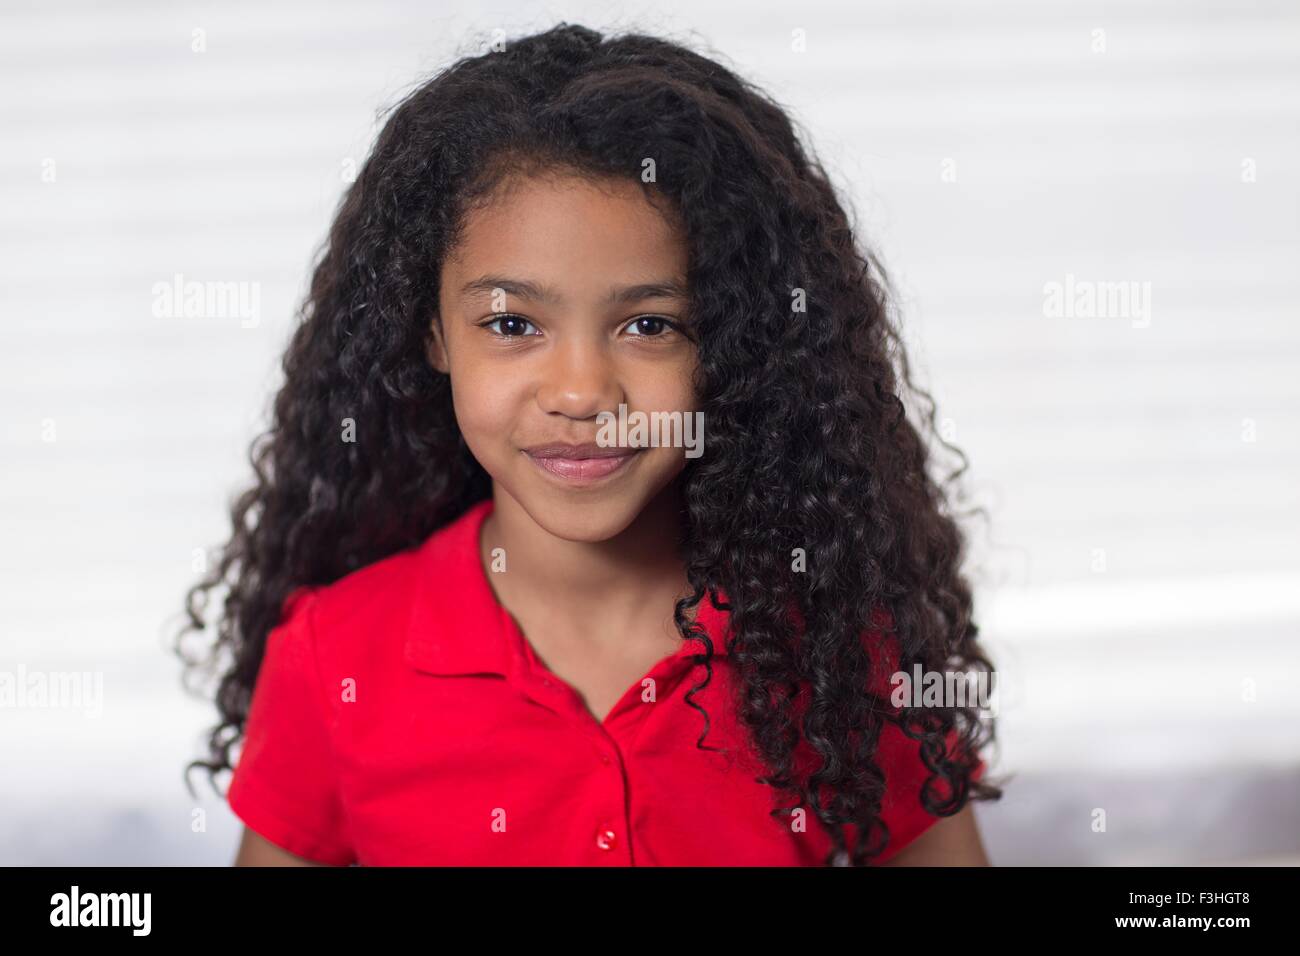 Retrato de la chica con el cabello negro rizado mirando a la cámara sonriendo Foto de stock